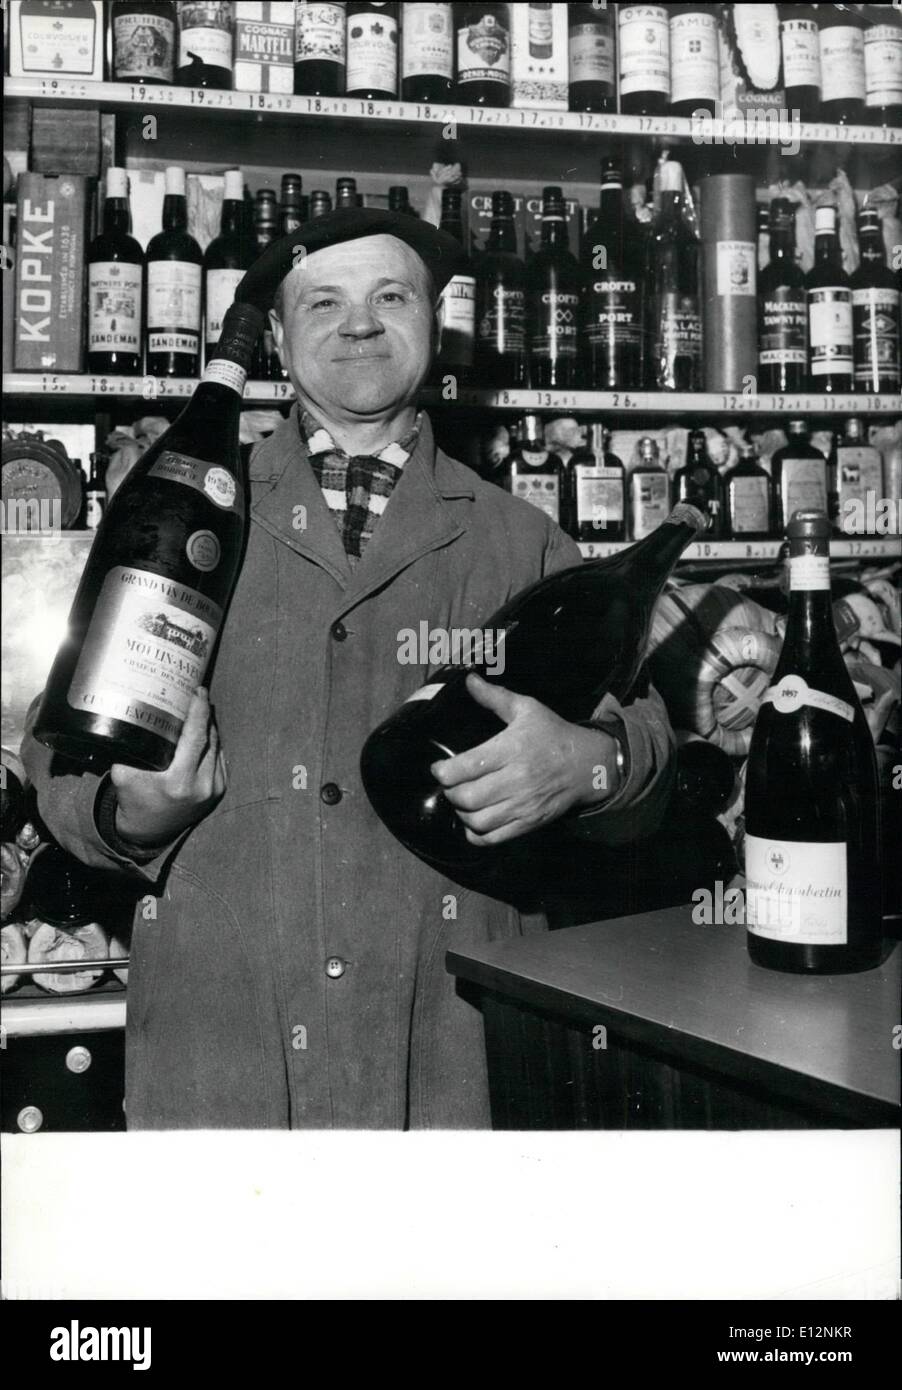 Febrero 24, 2012 - La mayoría pictureseque comerciante de vino en París: con ''Super'' de los mercados por doquier y aficionados de buen connoisseres Foto de stock